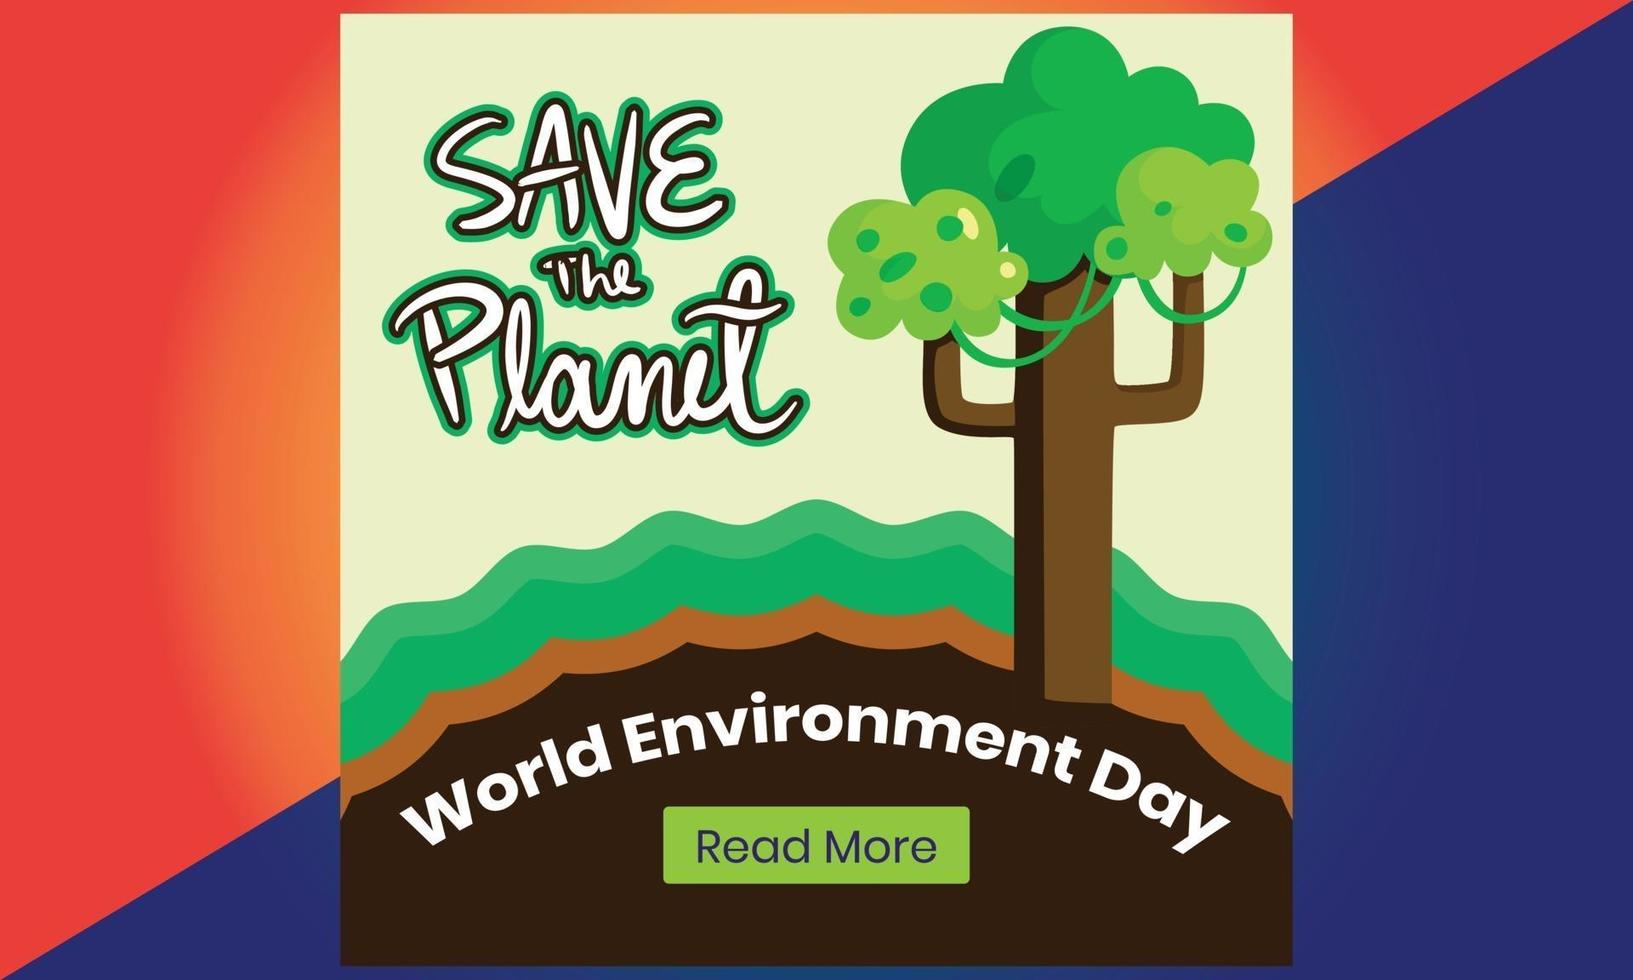 dia Mundial do Meio Ambiente. terra ecológica verde. dia Mundial do Meio Ambiente. vetor